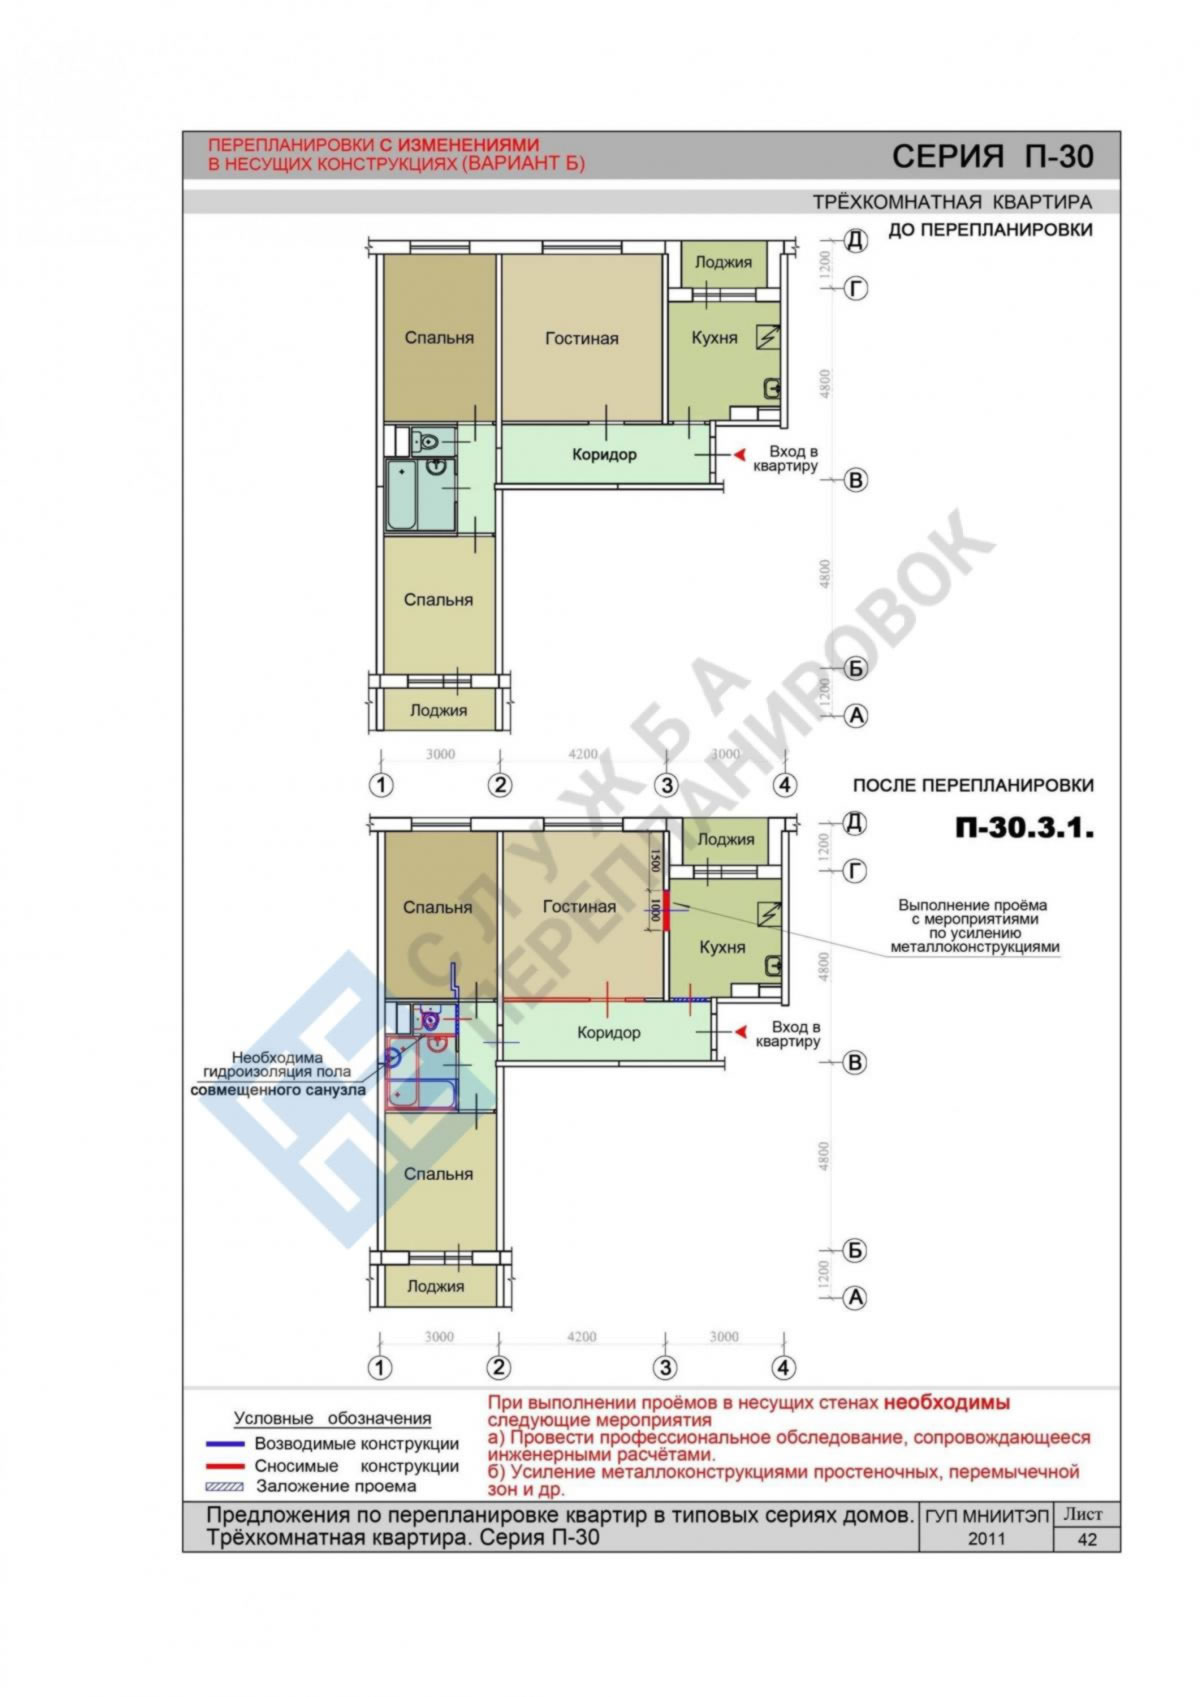 План трехкомнатной квартиры из каталога типовых перепланировок по серии П30